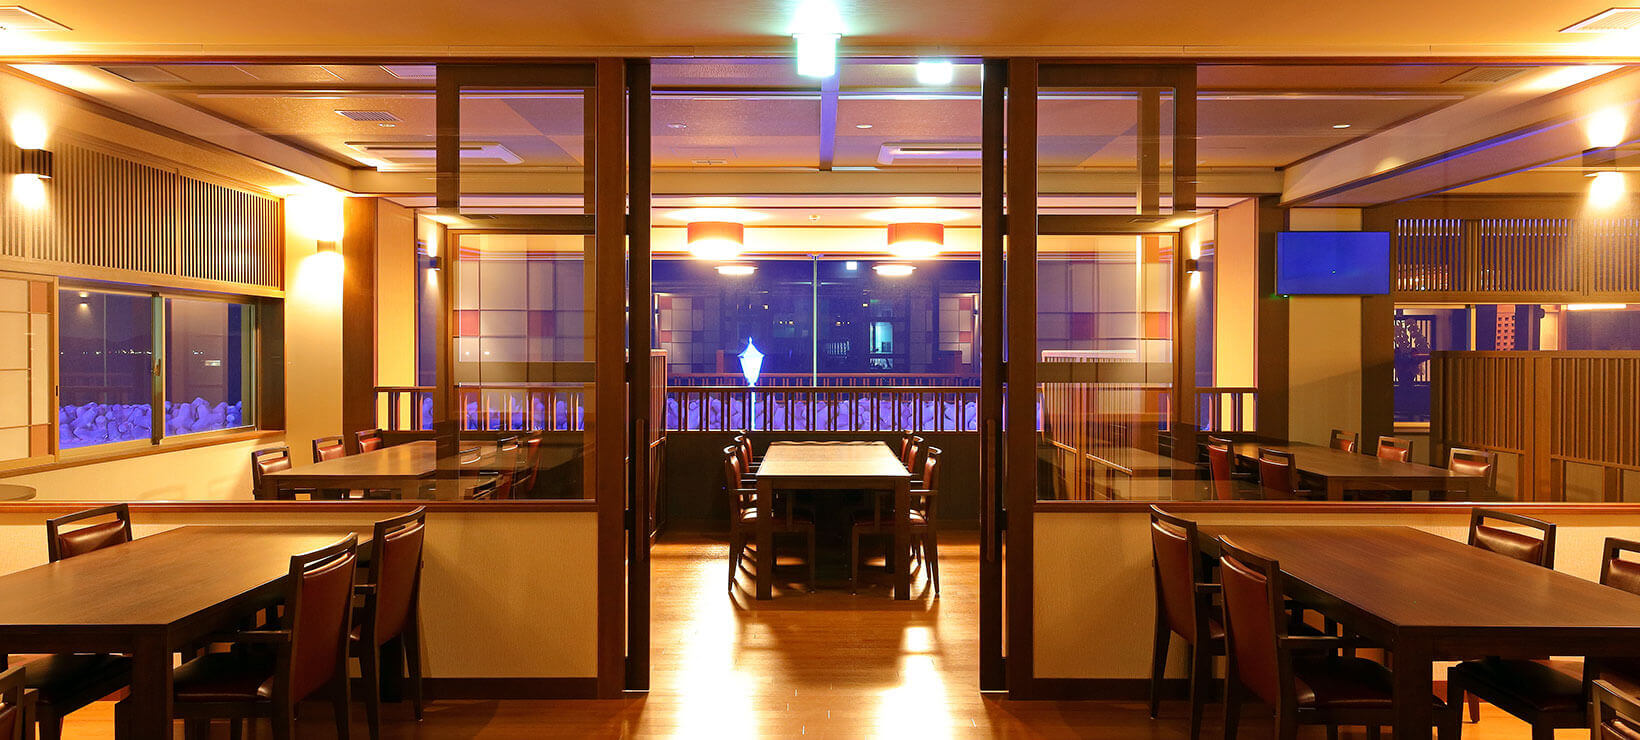 オーシャンビューダイニングレストラン「漣」 Ocean View Dining Restaurant “Sazanami”